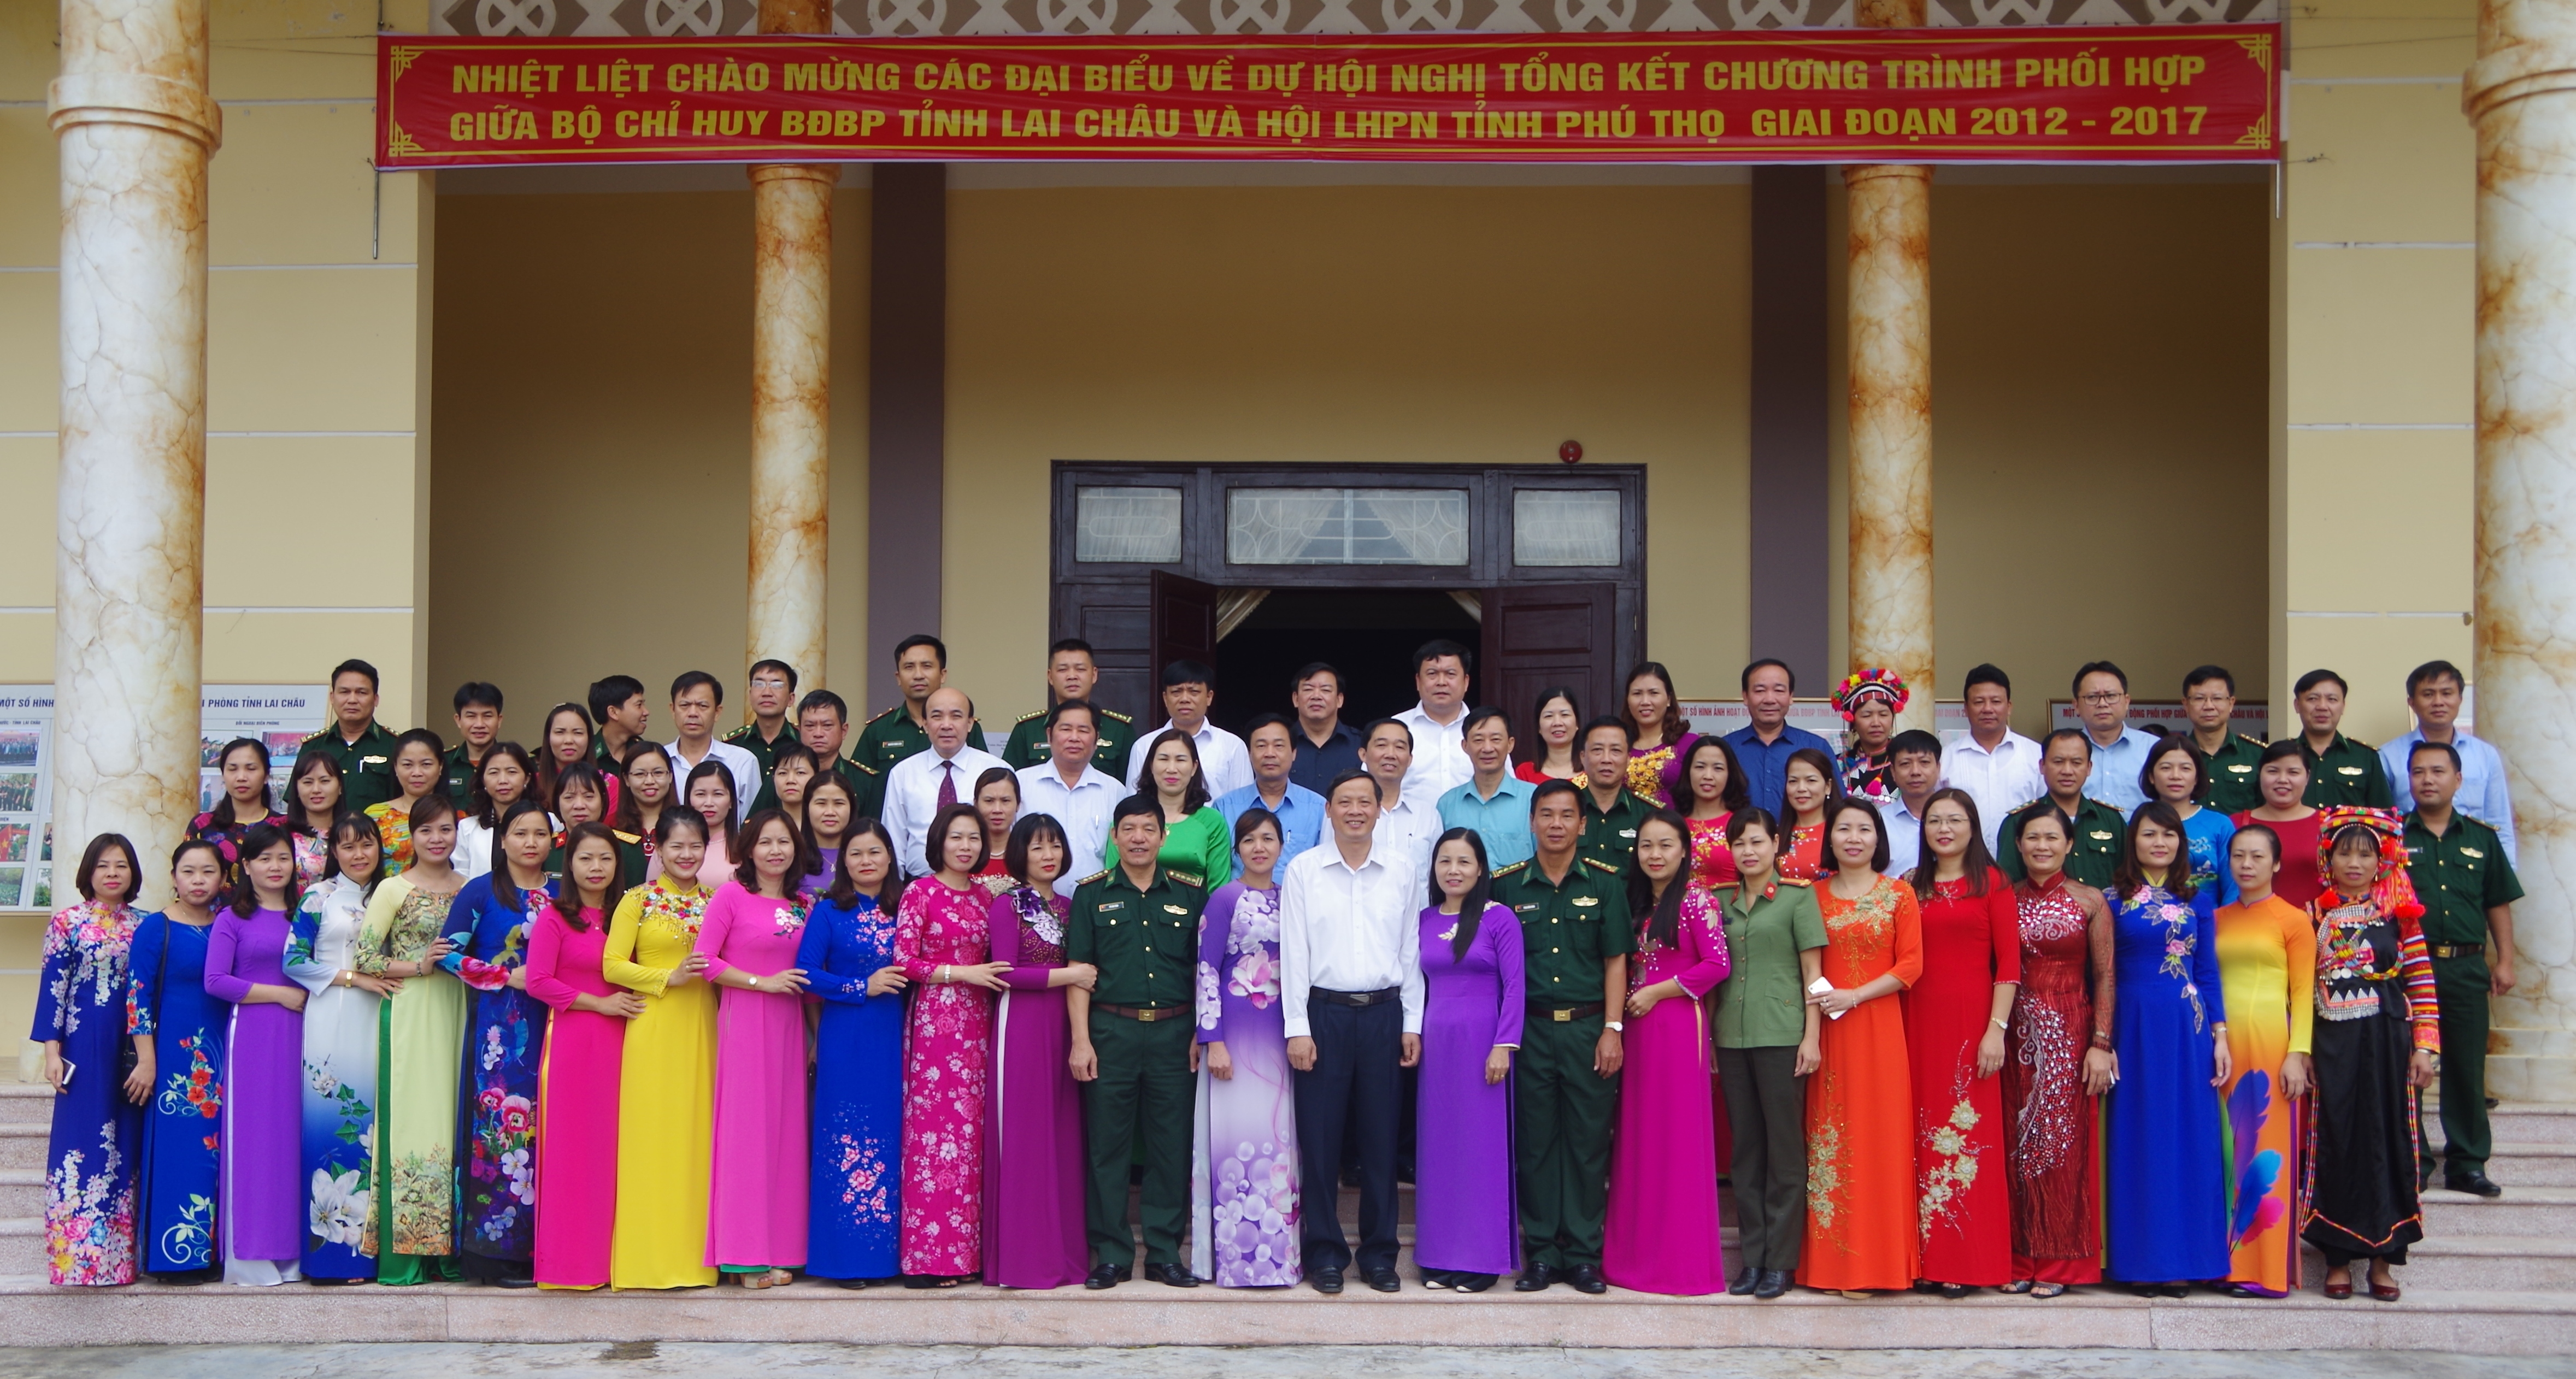 Hội nghị tổng kết chương trình phối hợp giữa Bộ Chỉ huy Bộ đội  biên phòng tỉnh Lai Châu và Hội LHPN tỉnh Phú Thọ